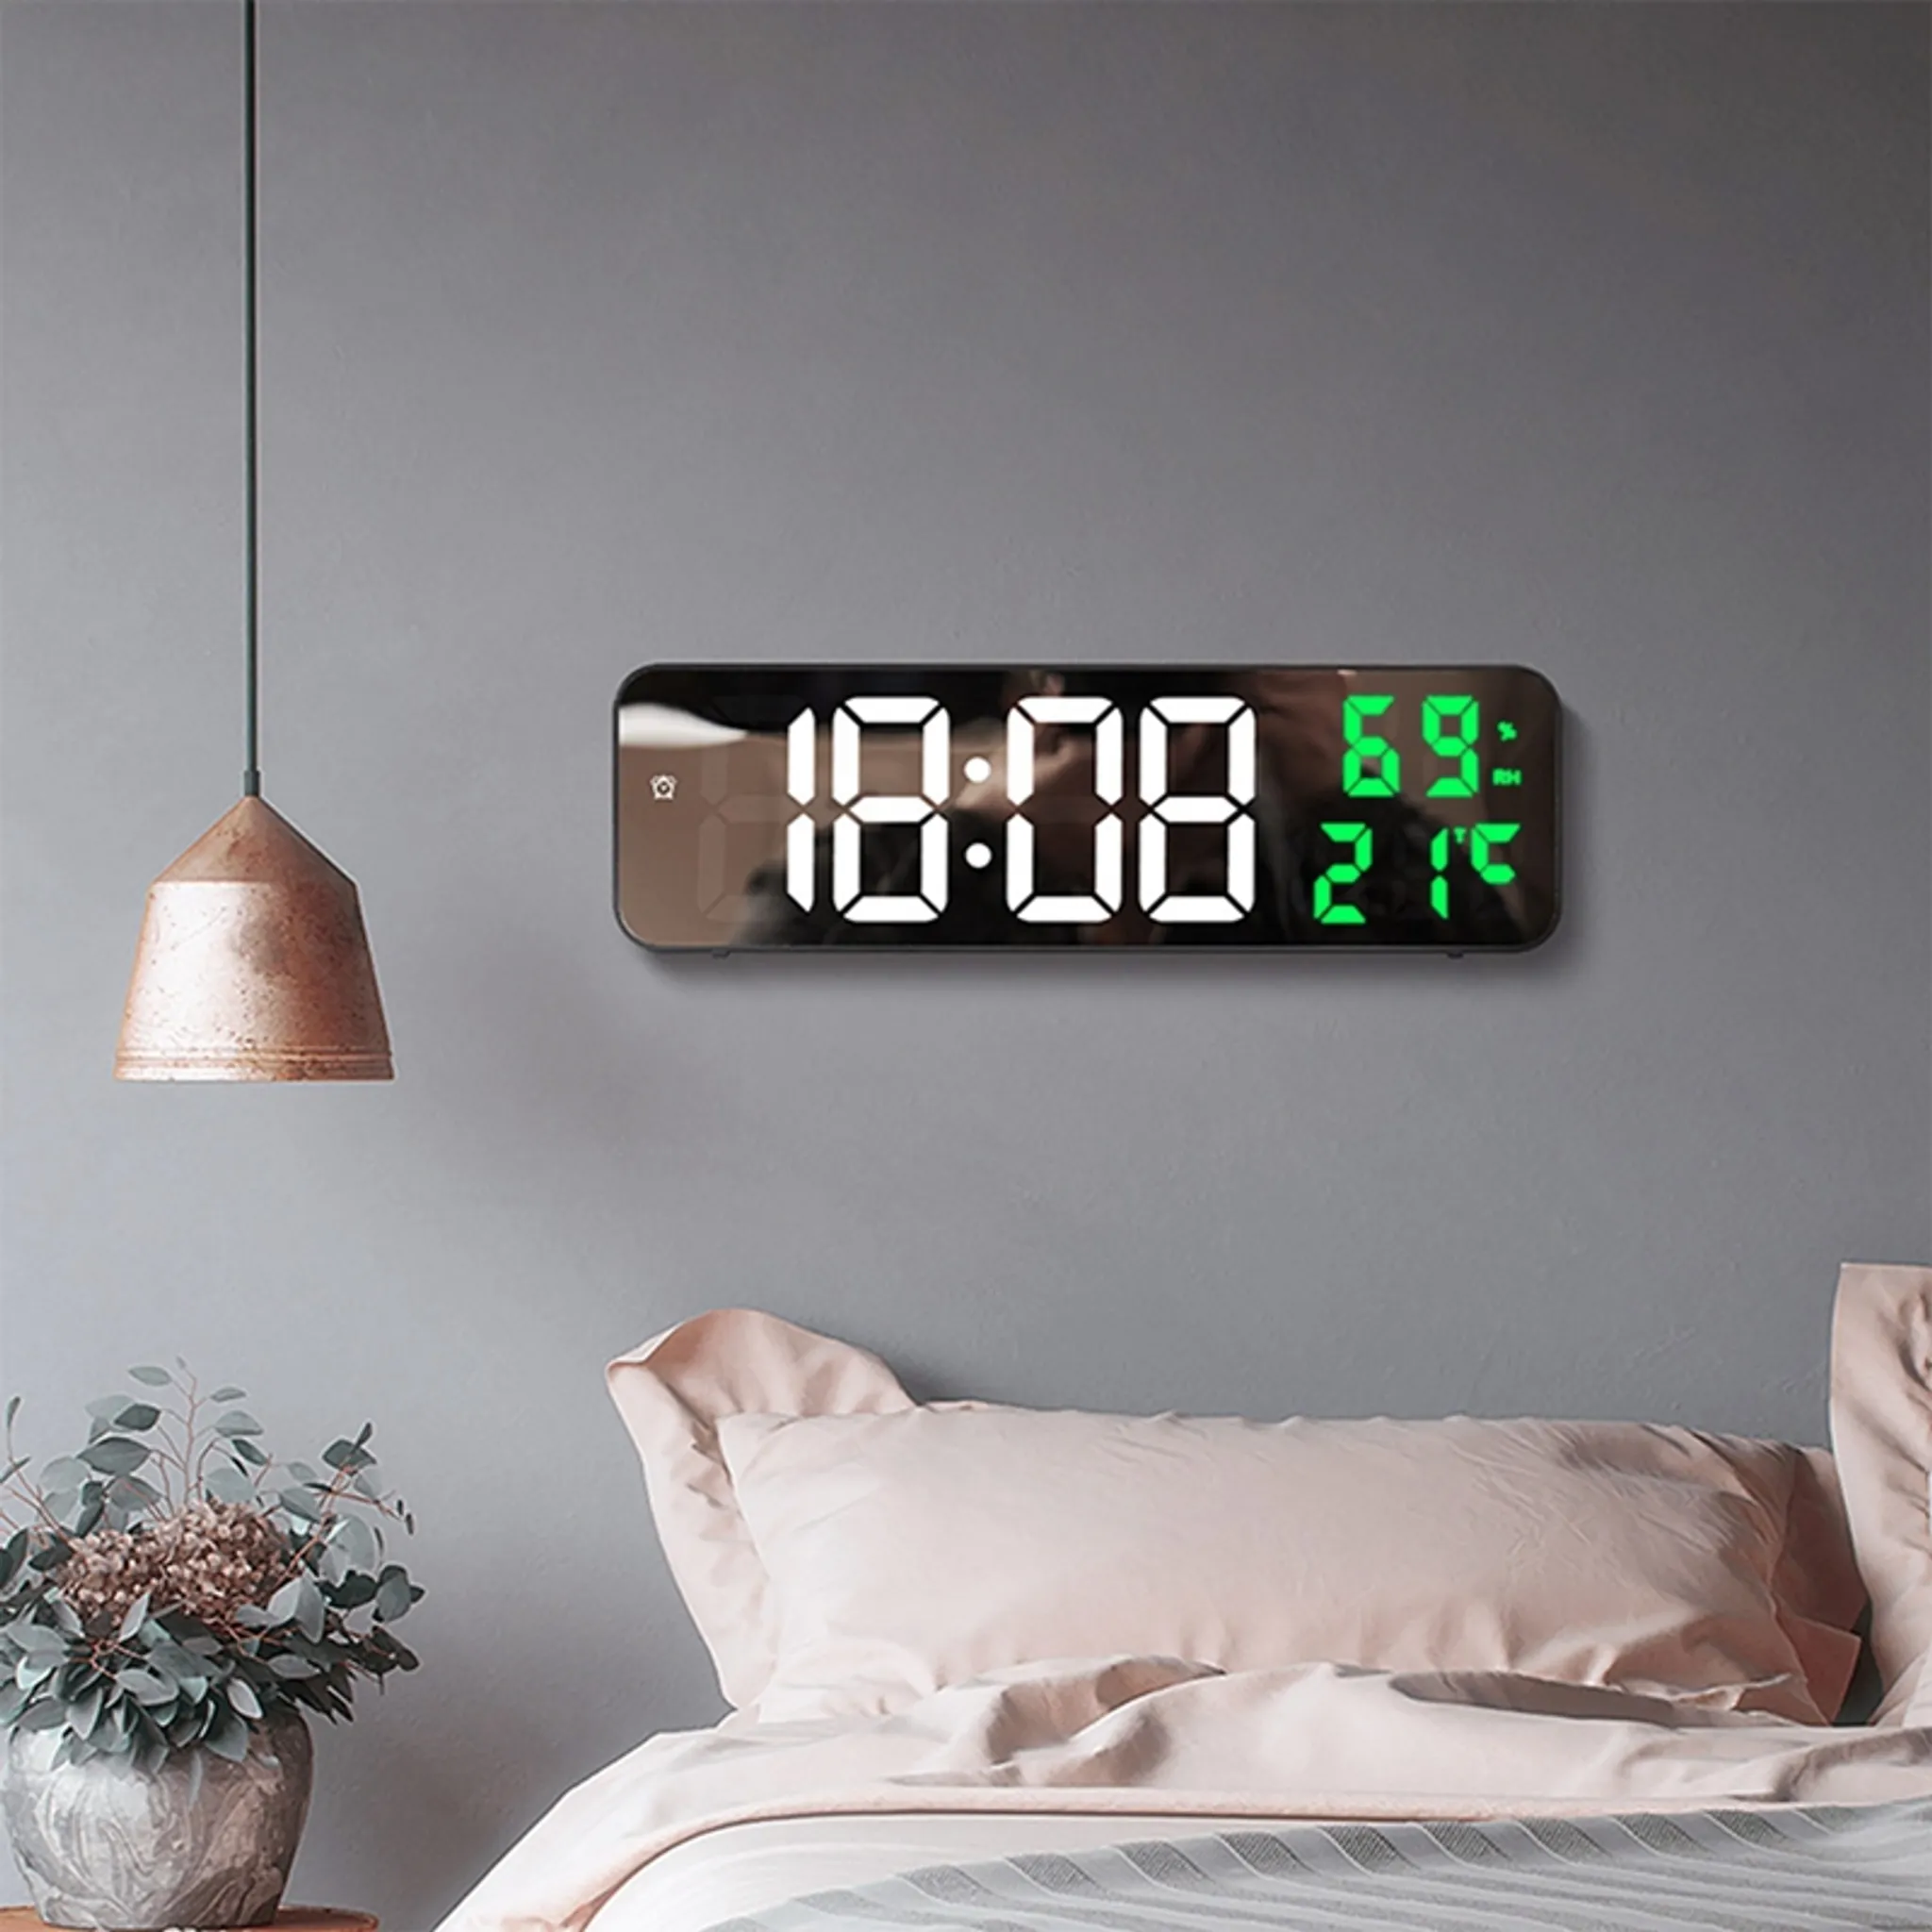  Digitale LED-Uhr, mit Datumsanzeige, große Anzeige, Grün